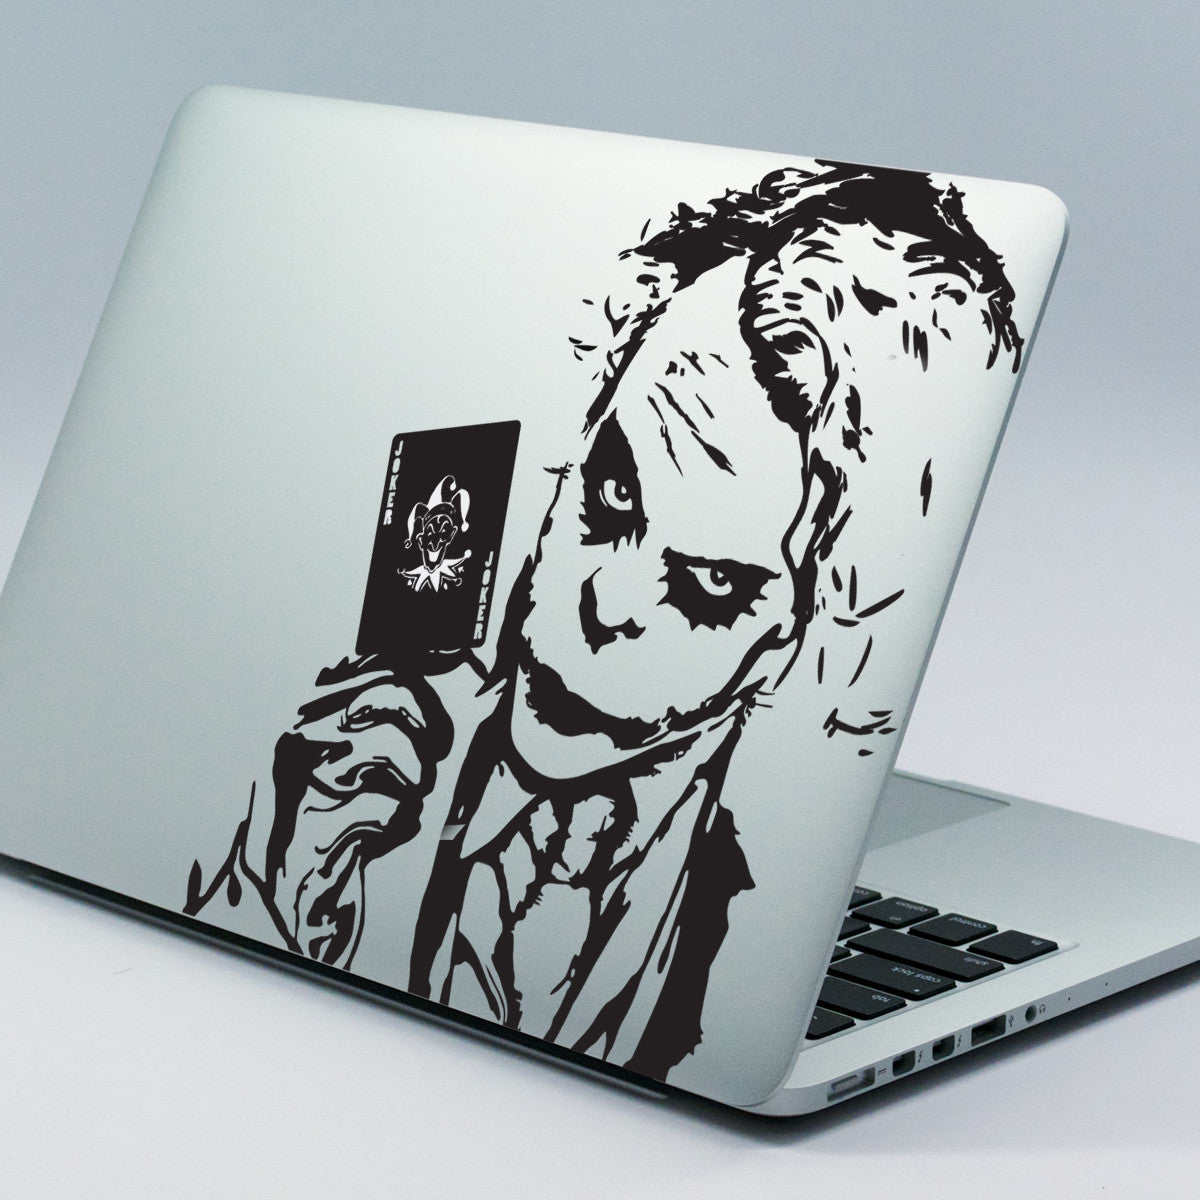 Joker Macbook Decal